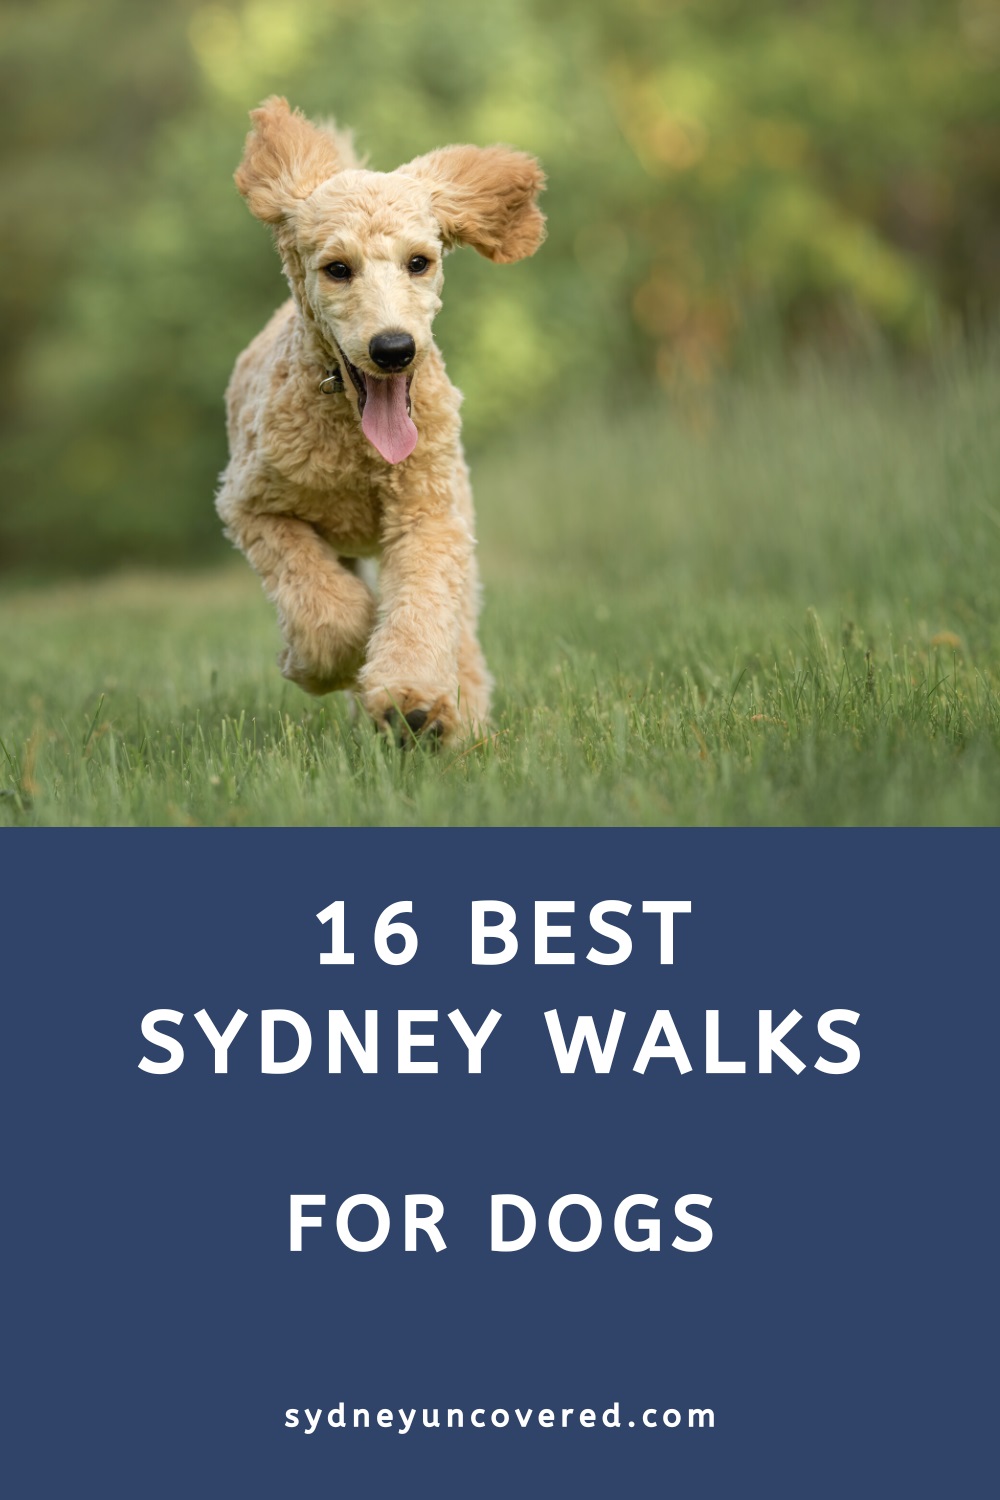 16 dog friendly Sydney walks